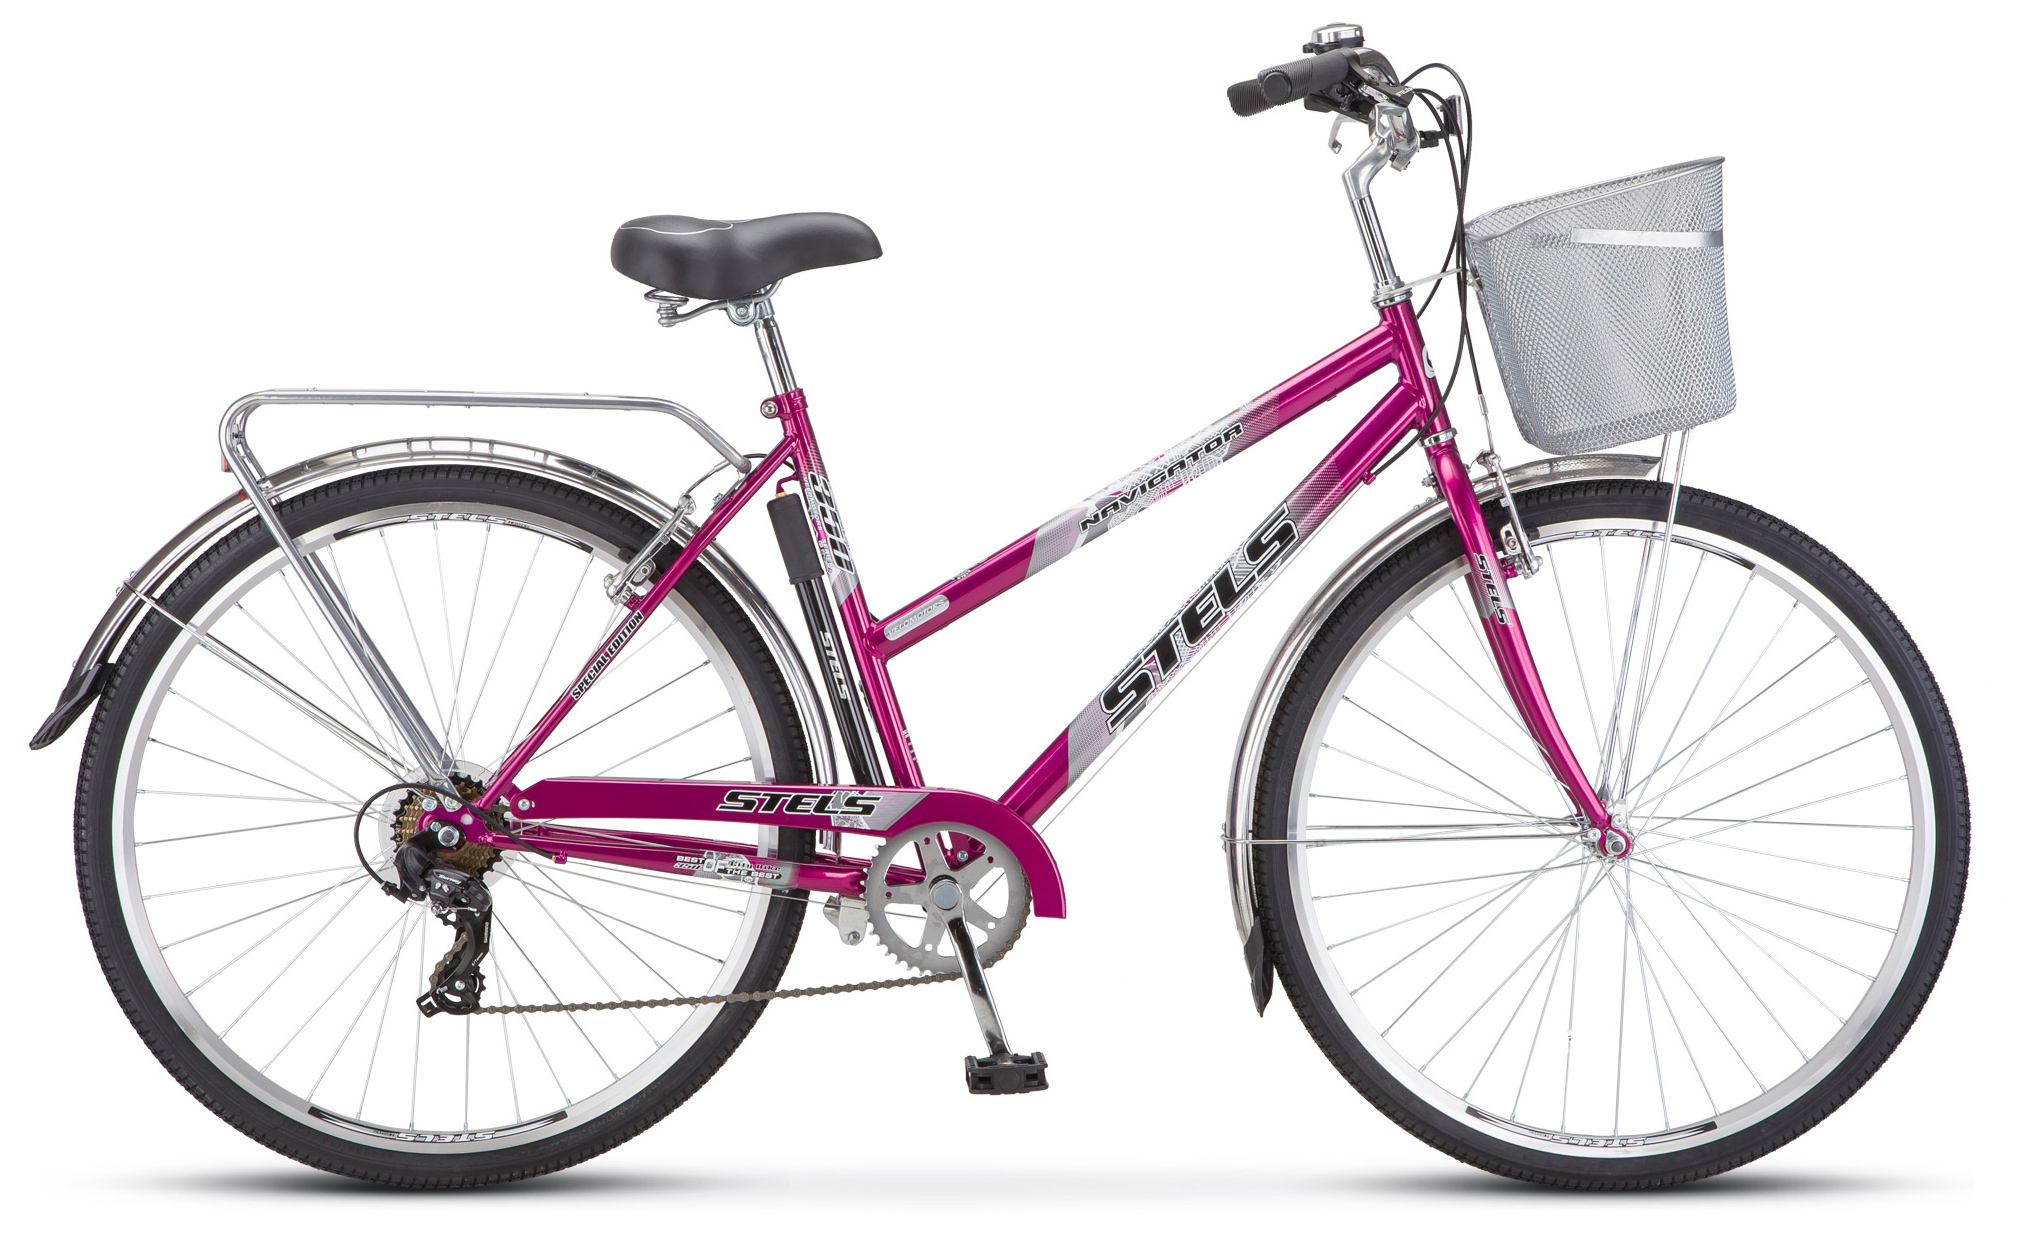  Отзывы о Женском велосипеде Stels Navigator 350 Lady 28" (Z010) 2019